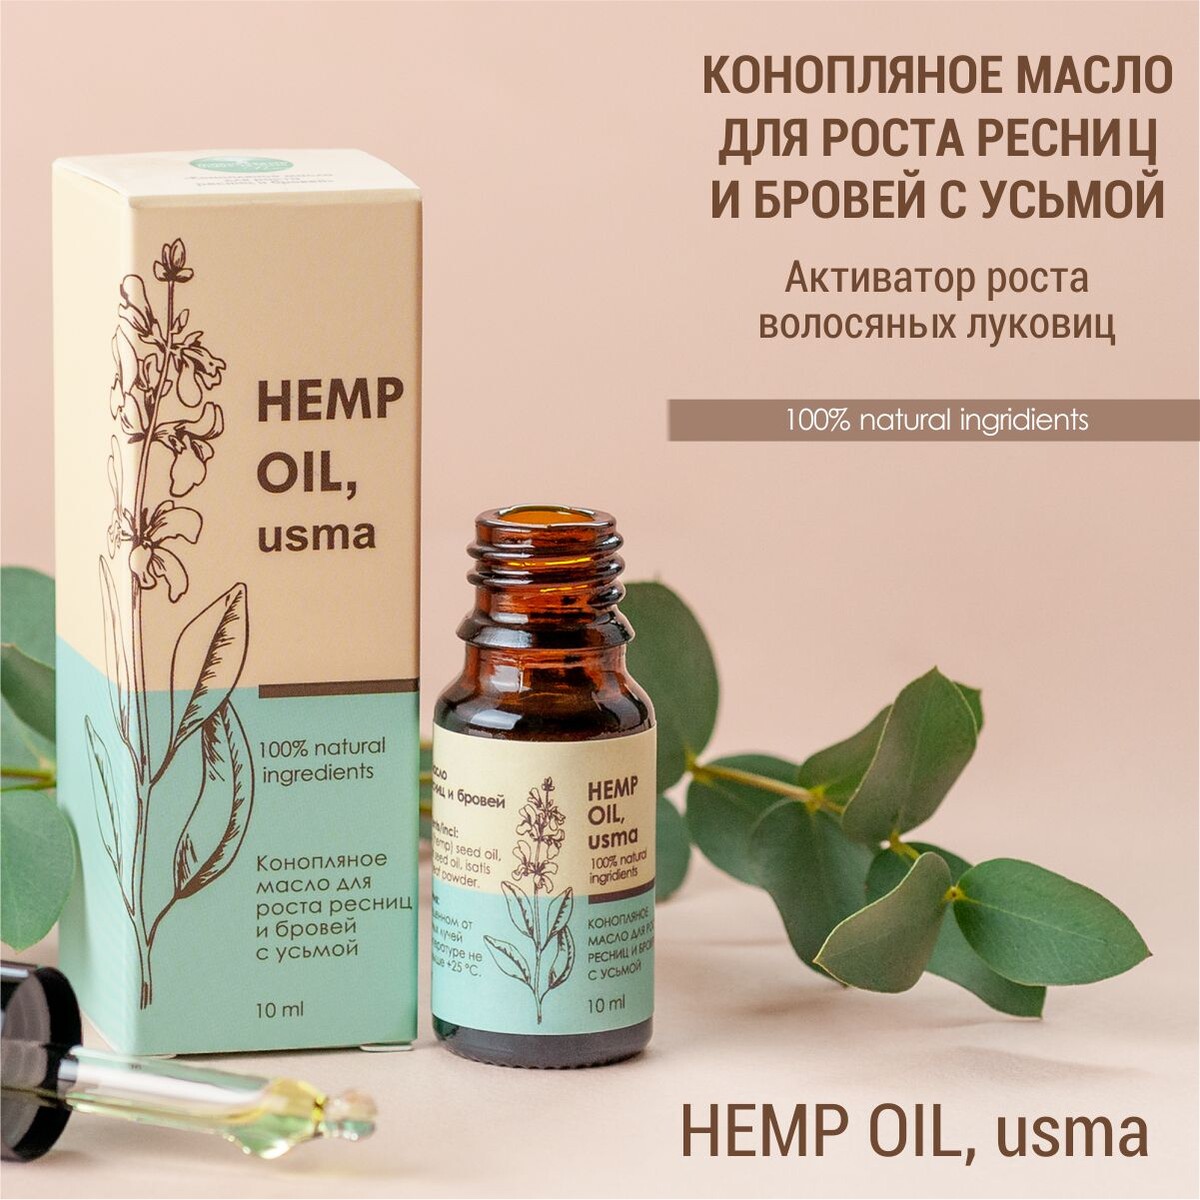 Конопляное масло для роста ресниц и бровей с усьмой (hemp oil, usma) масло для бровей пипетка 10мл